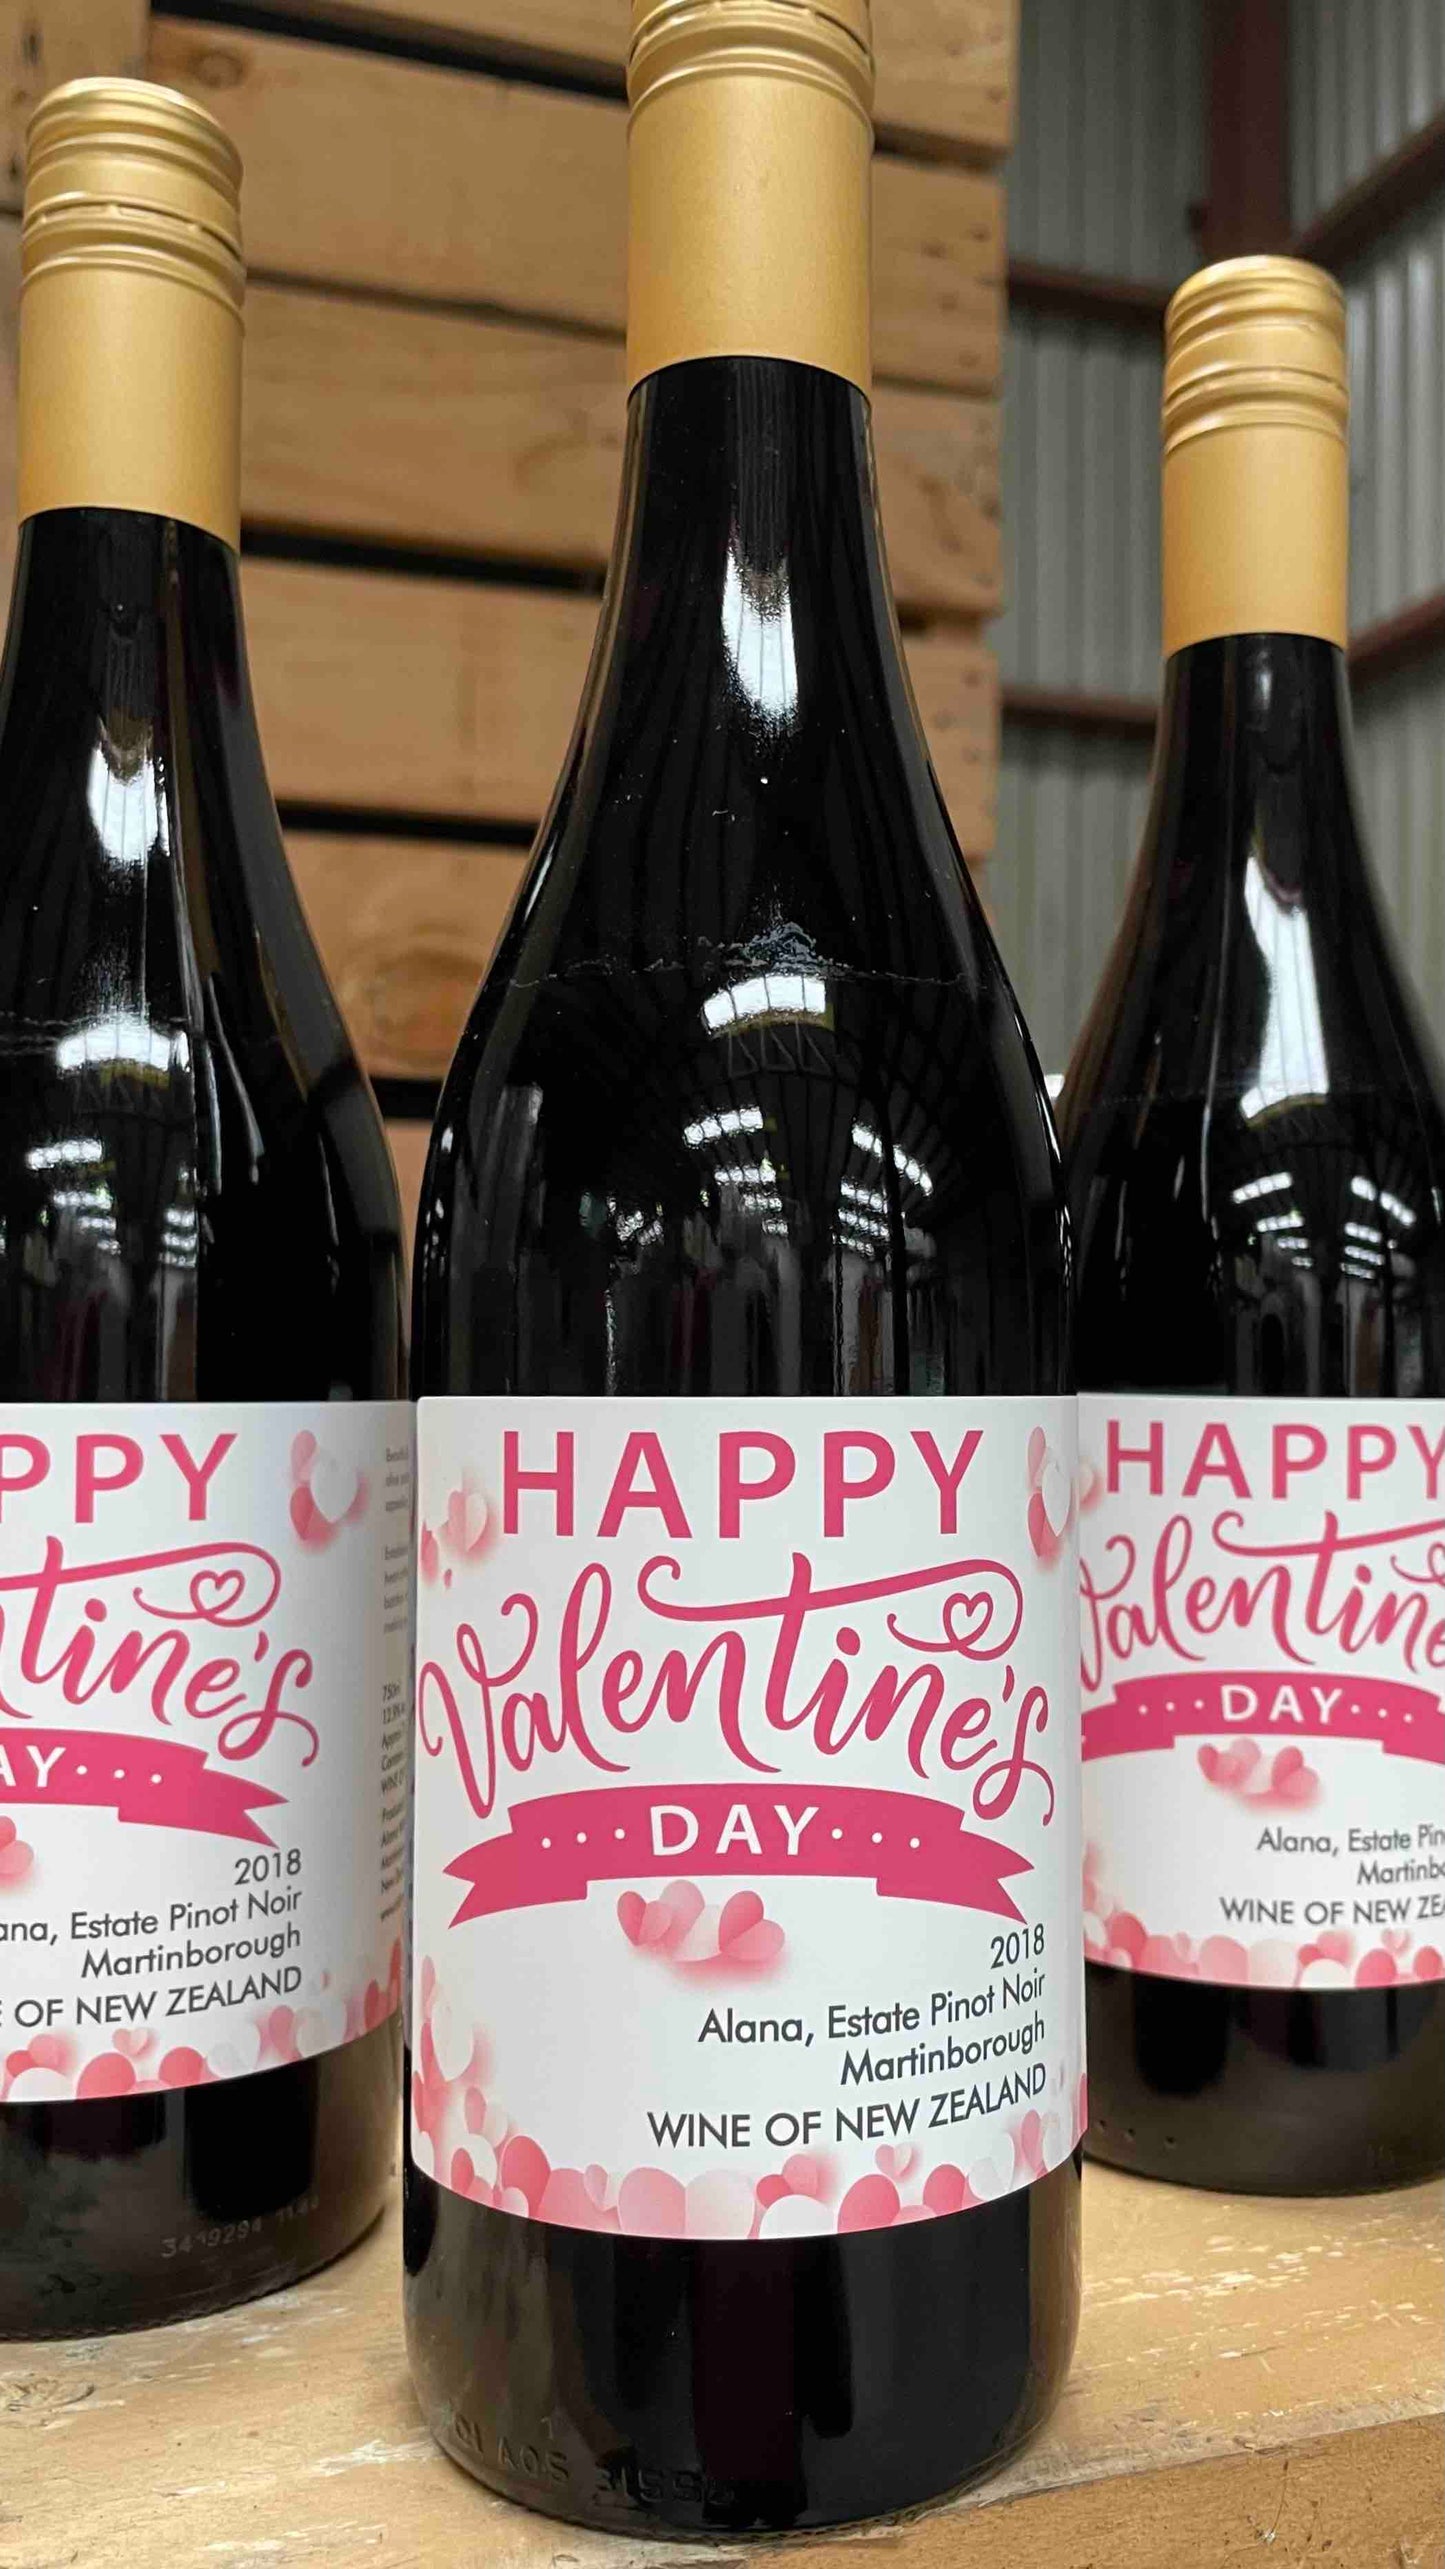 Happy Valentine's Day Estate Pinot Noir, 2019